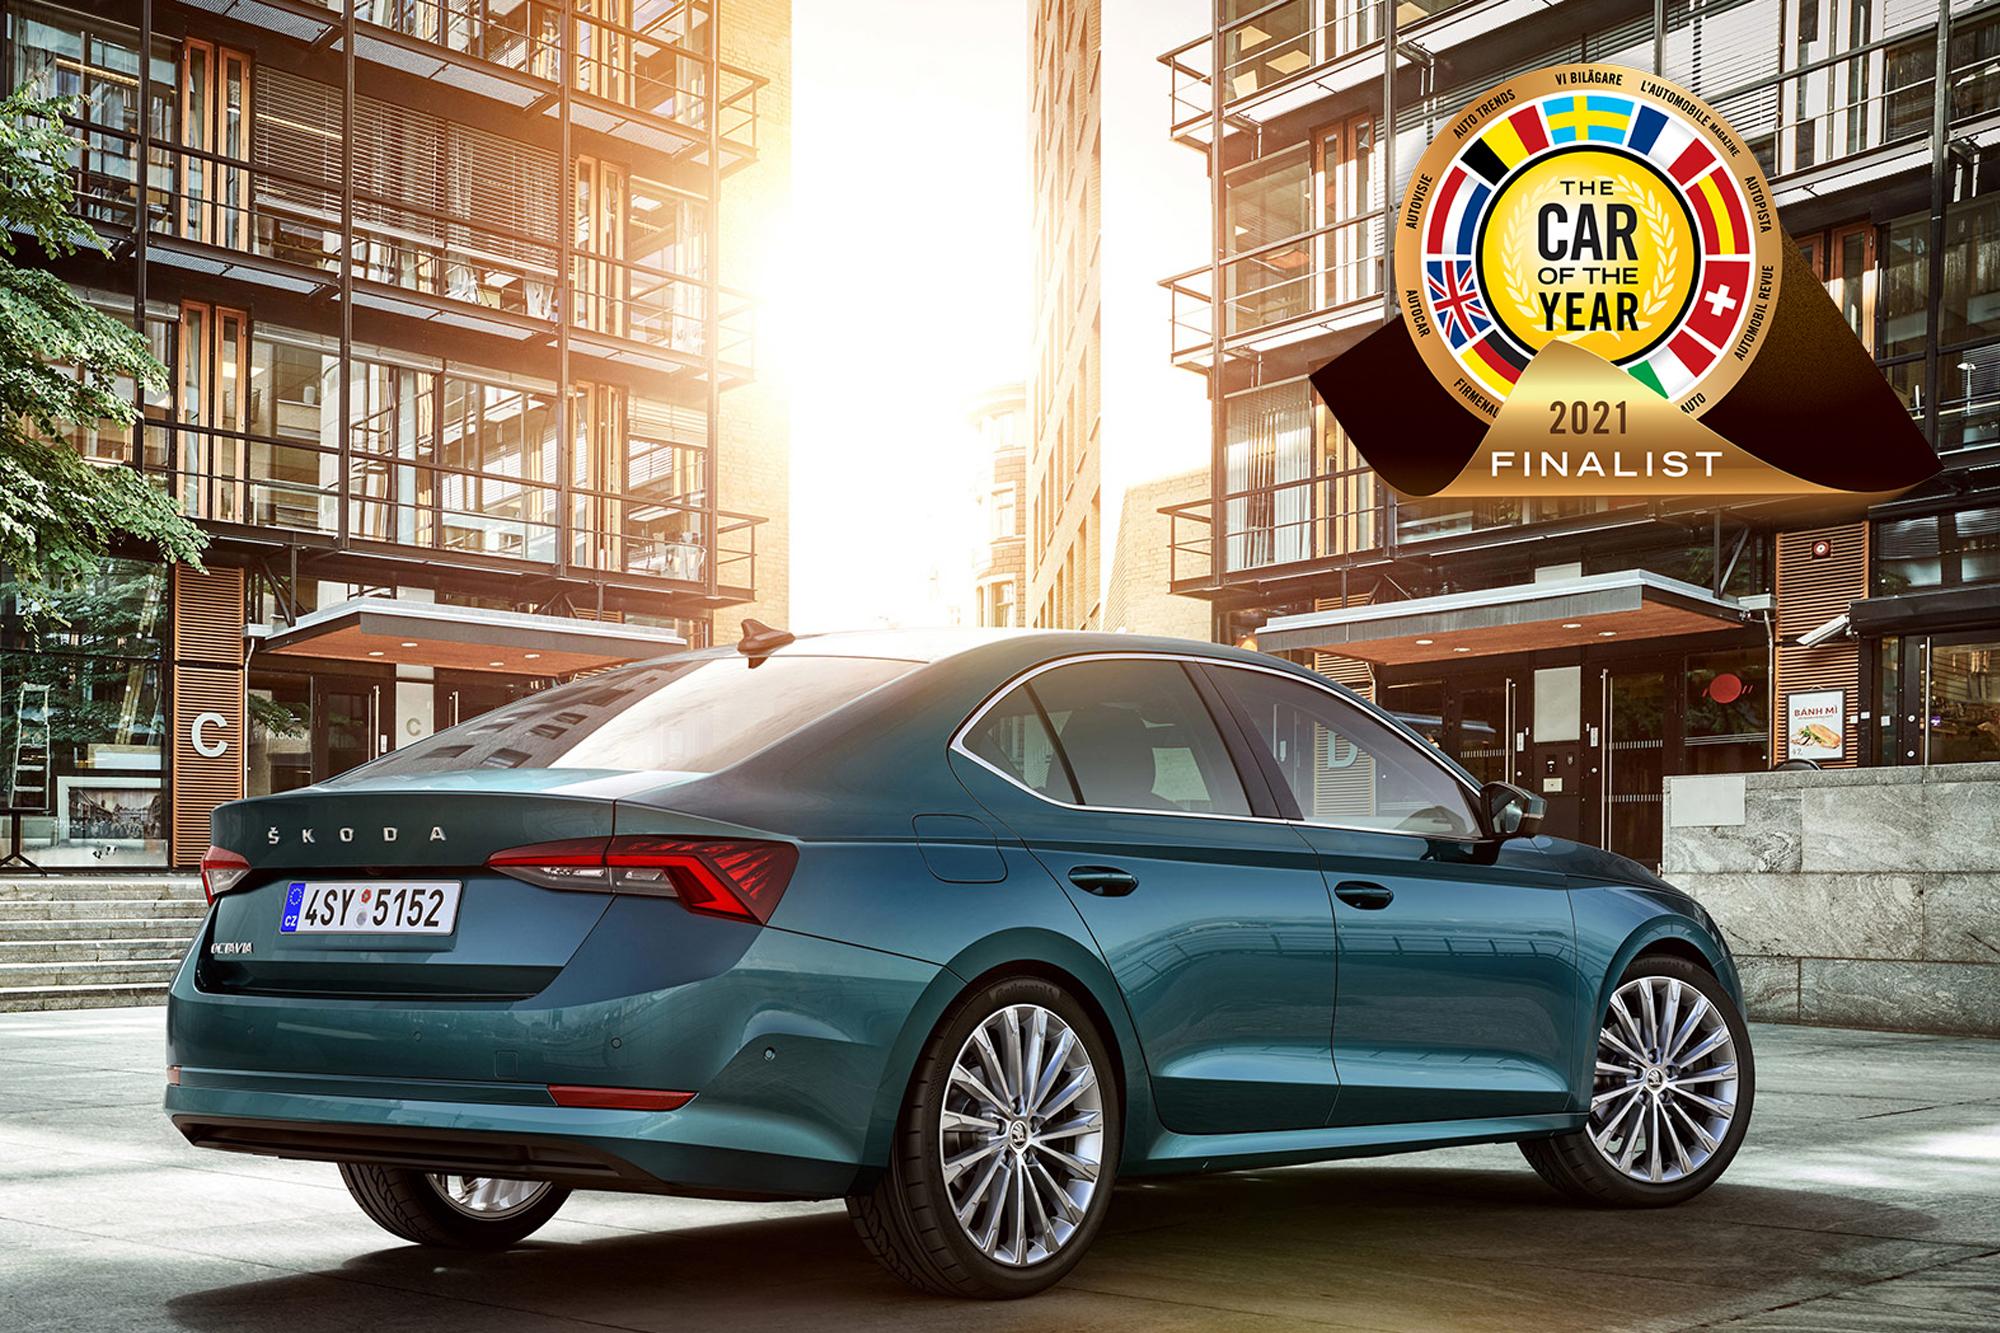 Η Skoda Octavia υποψήφια για το πανευρωπαϊκό βραβείο “Car of the Year”